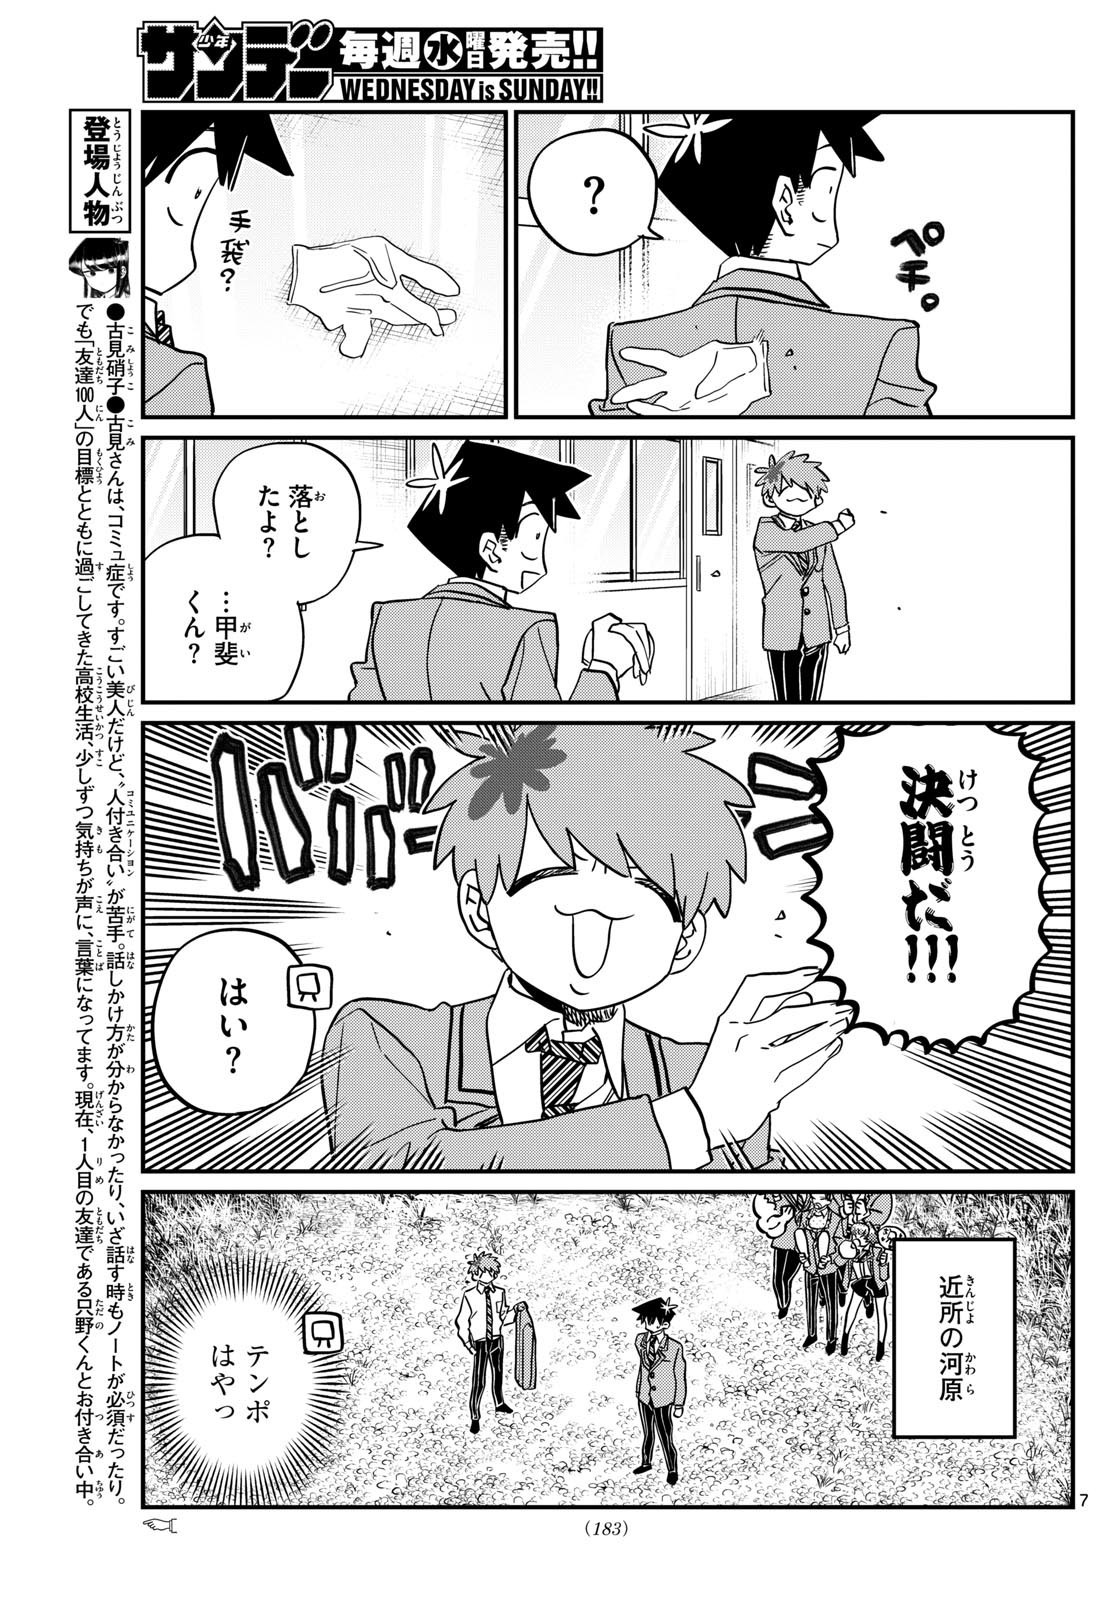 Komi-san wa Komyushou Desu - Chapter 471 - Page 2